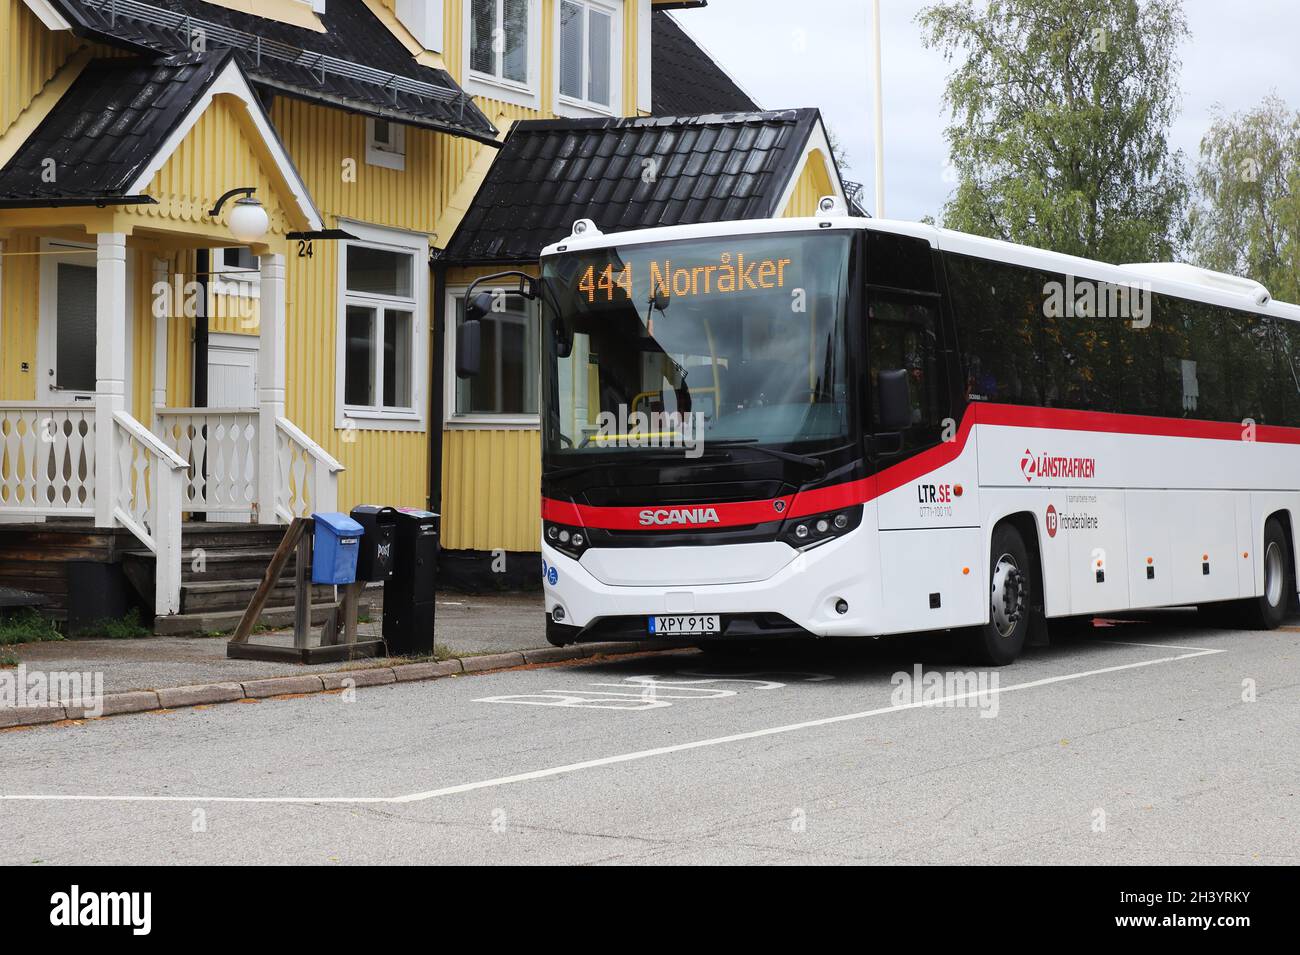 Hoting, Schweden - 25. August 2021: Bus der Linie 444 fährt nach Norraker und wartet auf die Abfahrt am Bahnhof Bus st Stockfoto